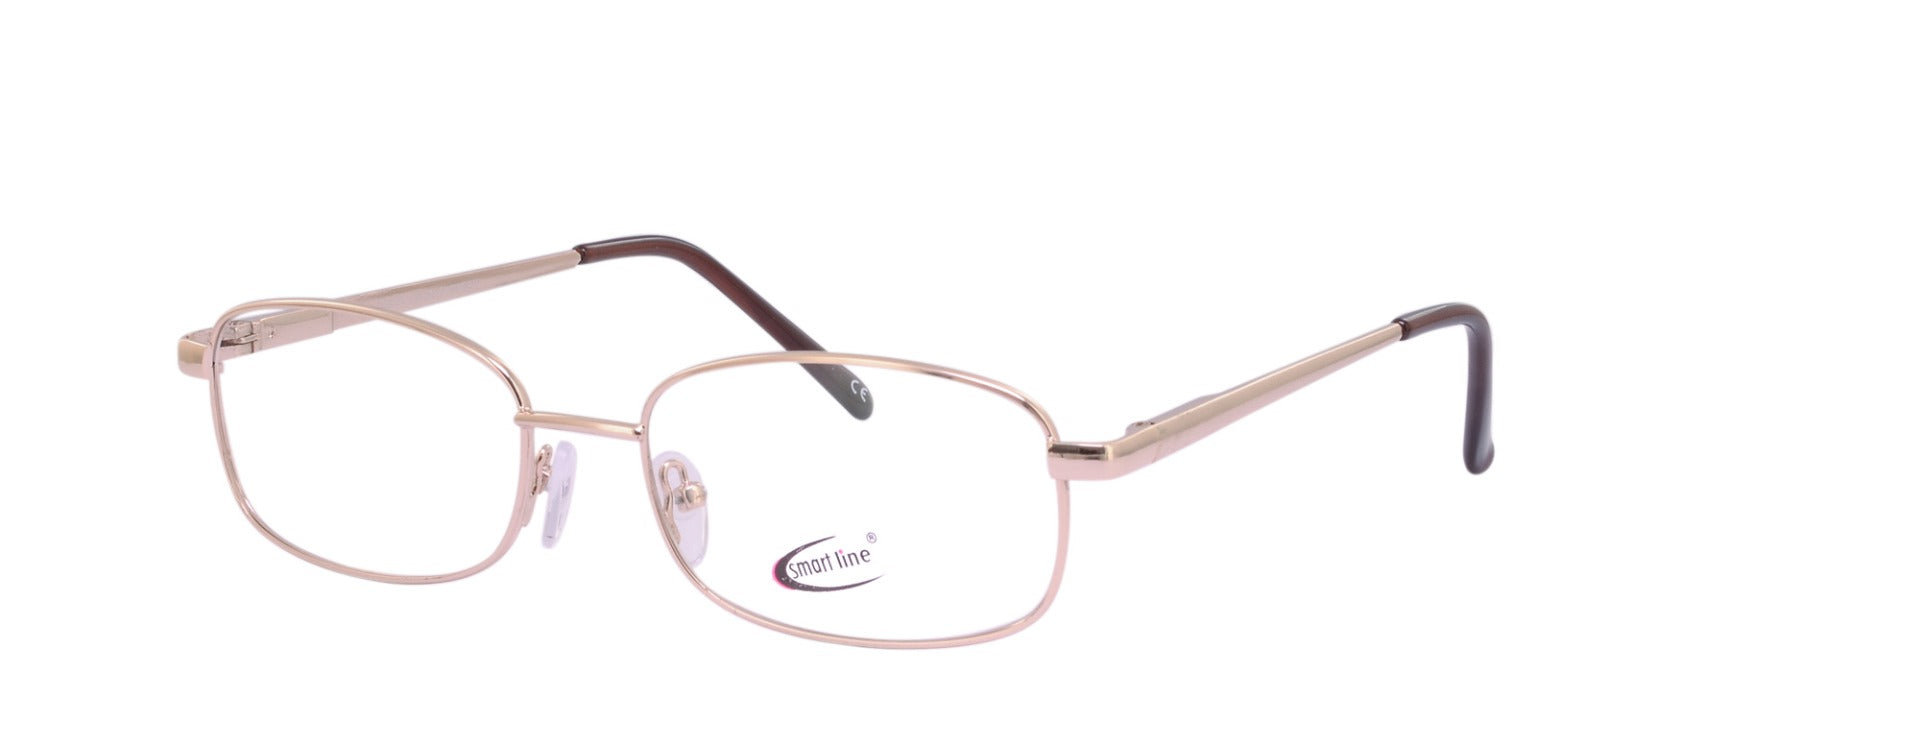 smartline frames designer rectangle glasses